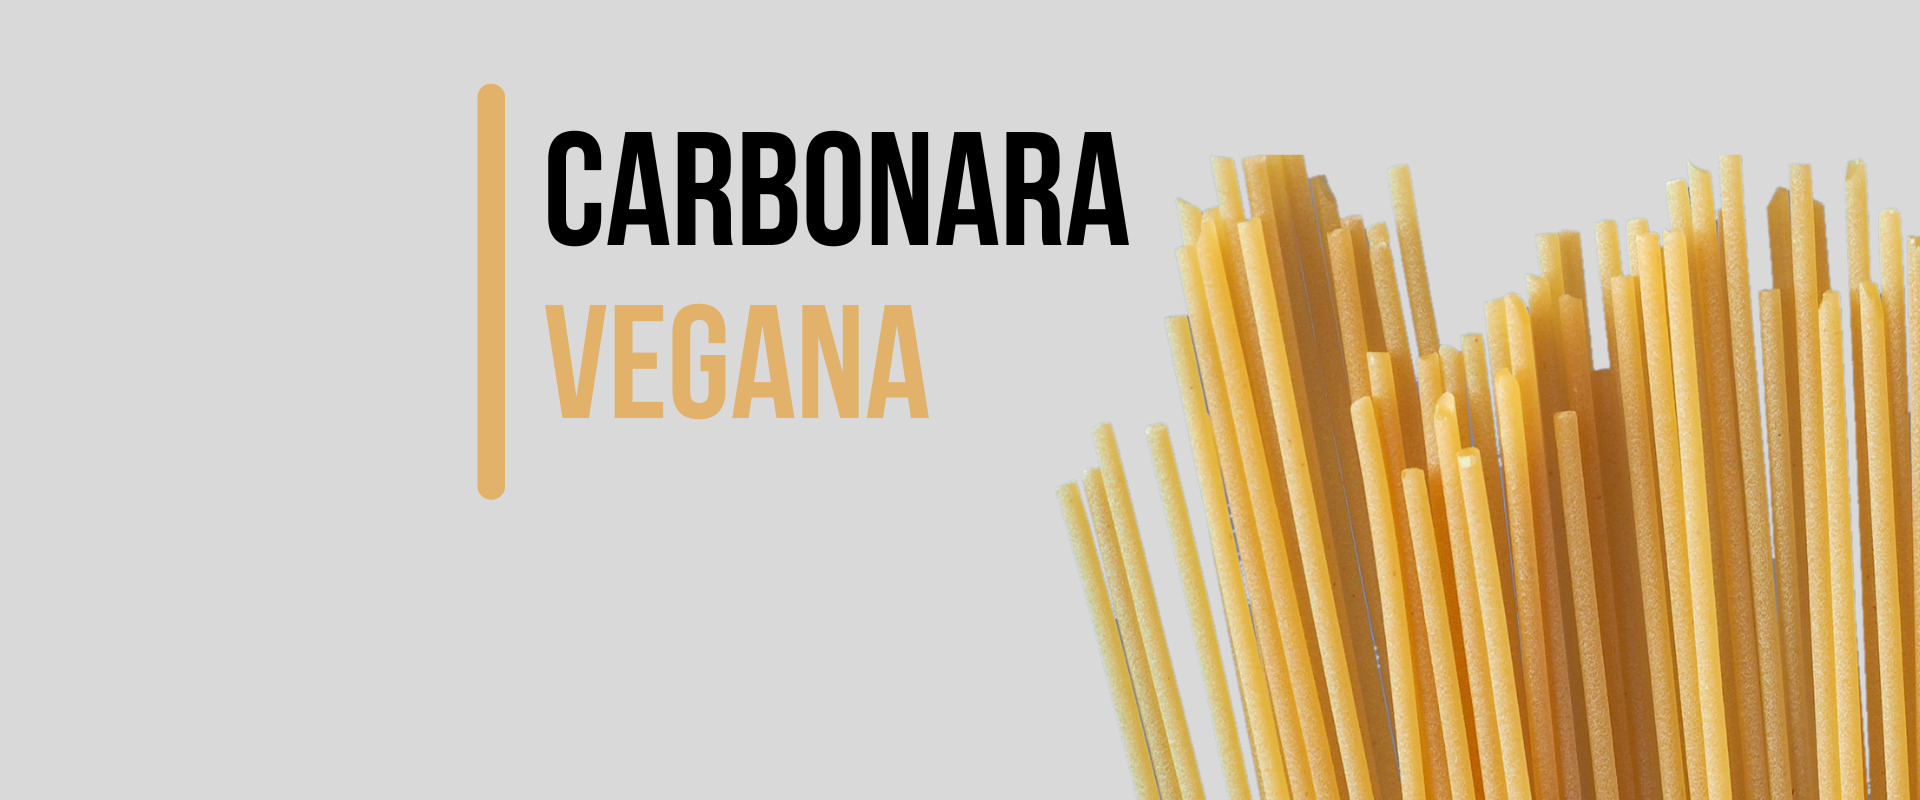 Carbonara vegana